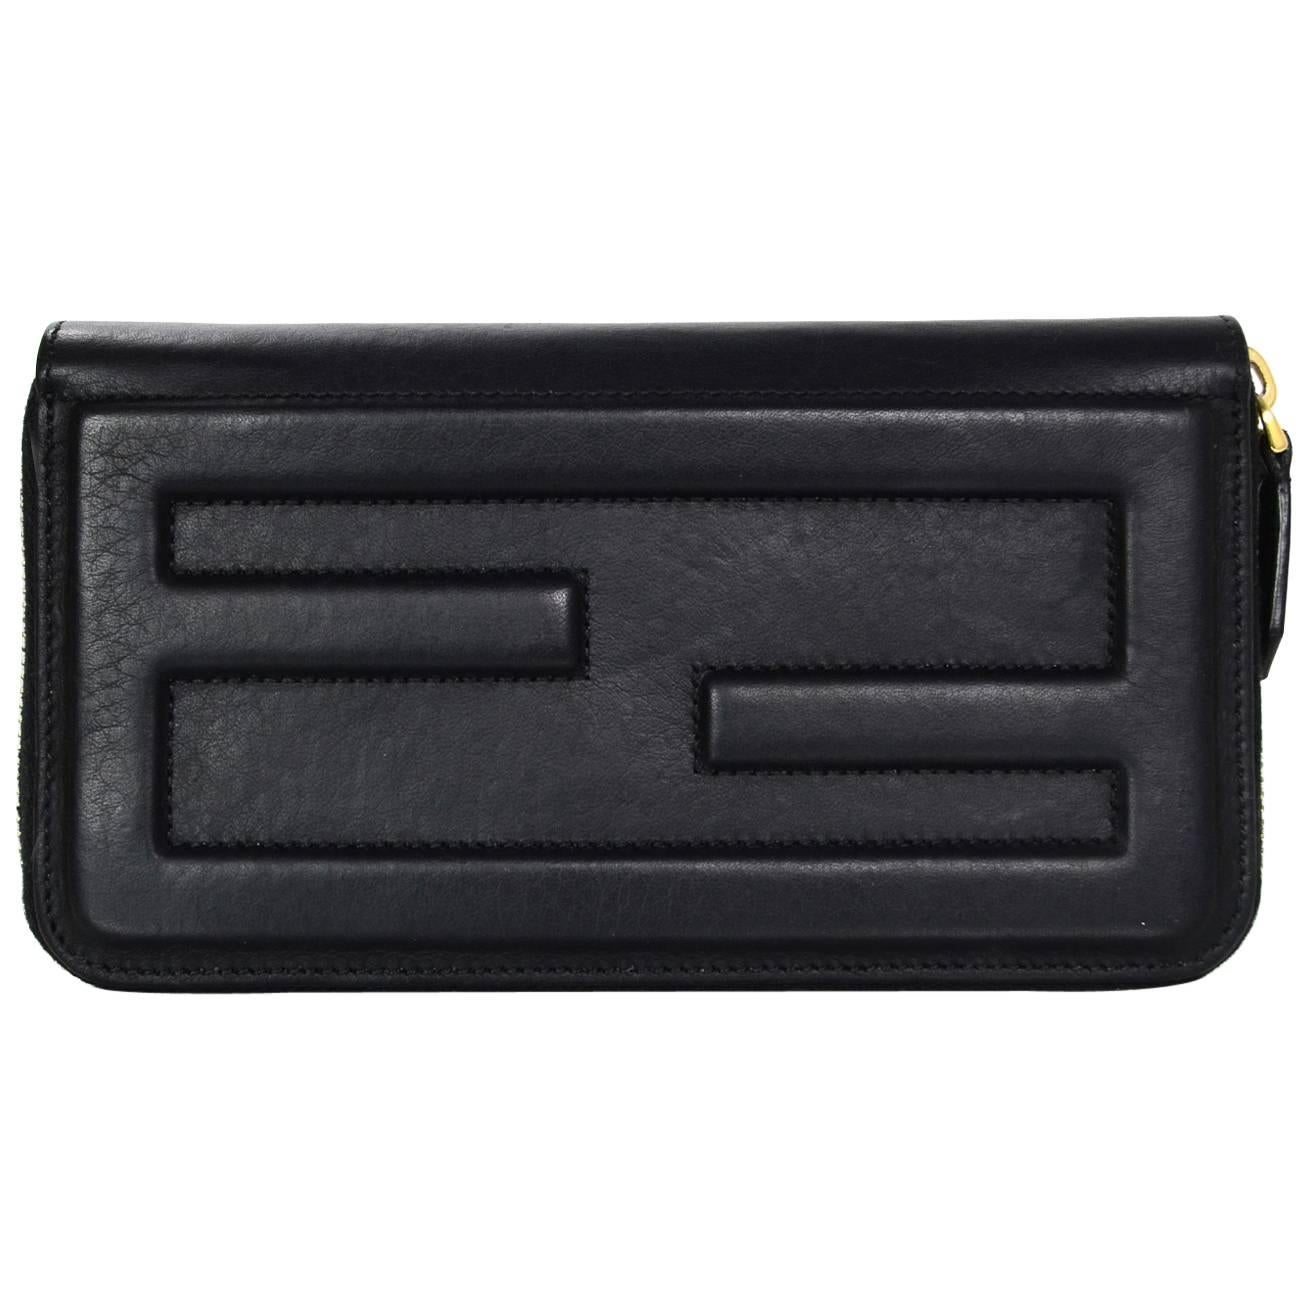 Fendi 2016 Black Leather Logo Zip Around Wallet GHW rt $650